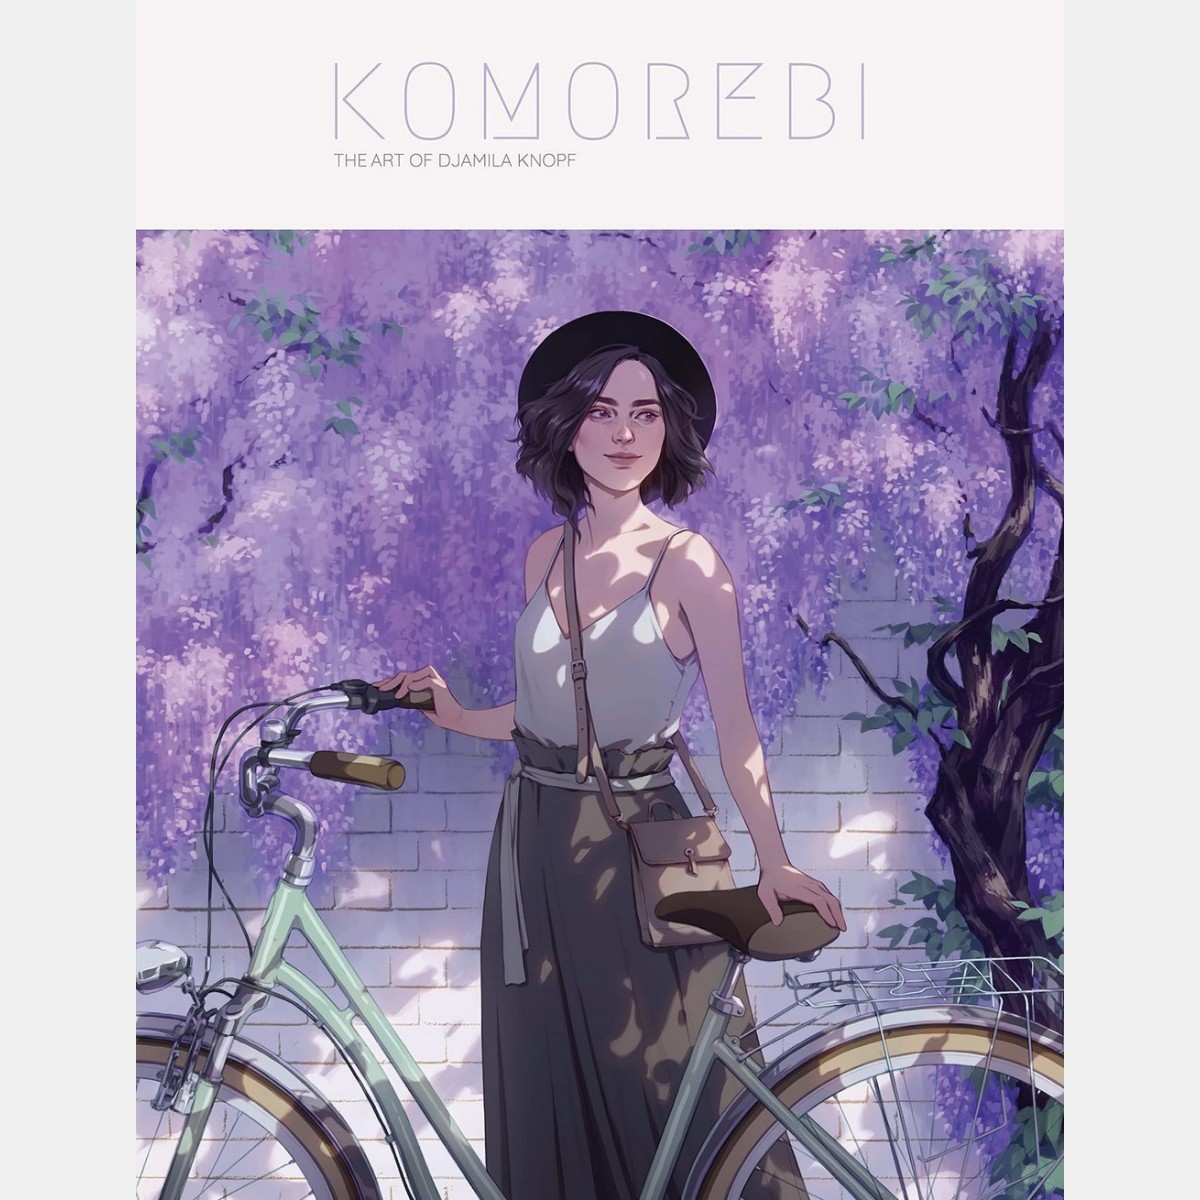 Komorebi: The Art of Djamila Knopf